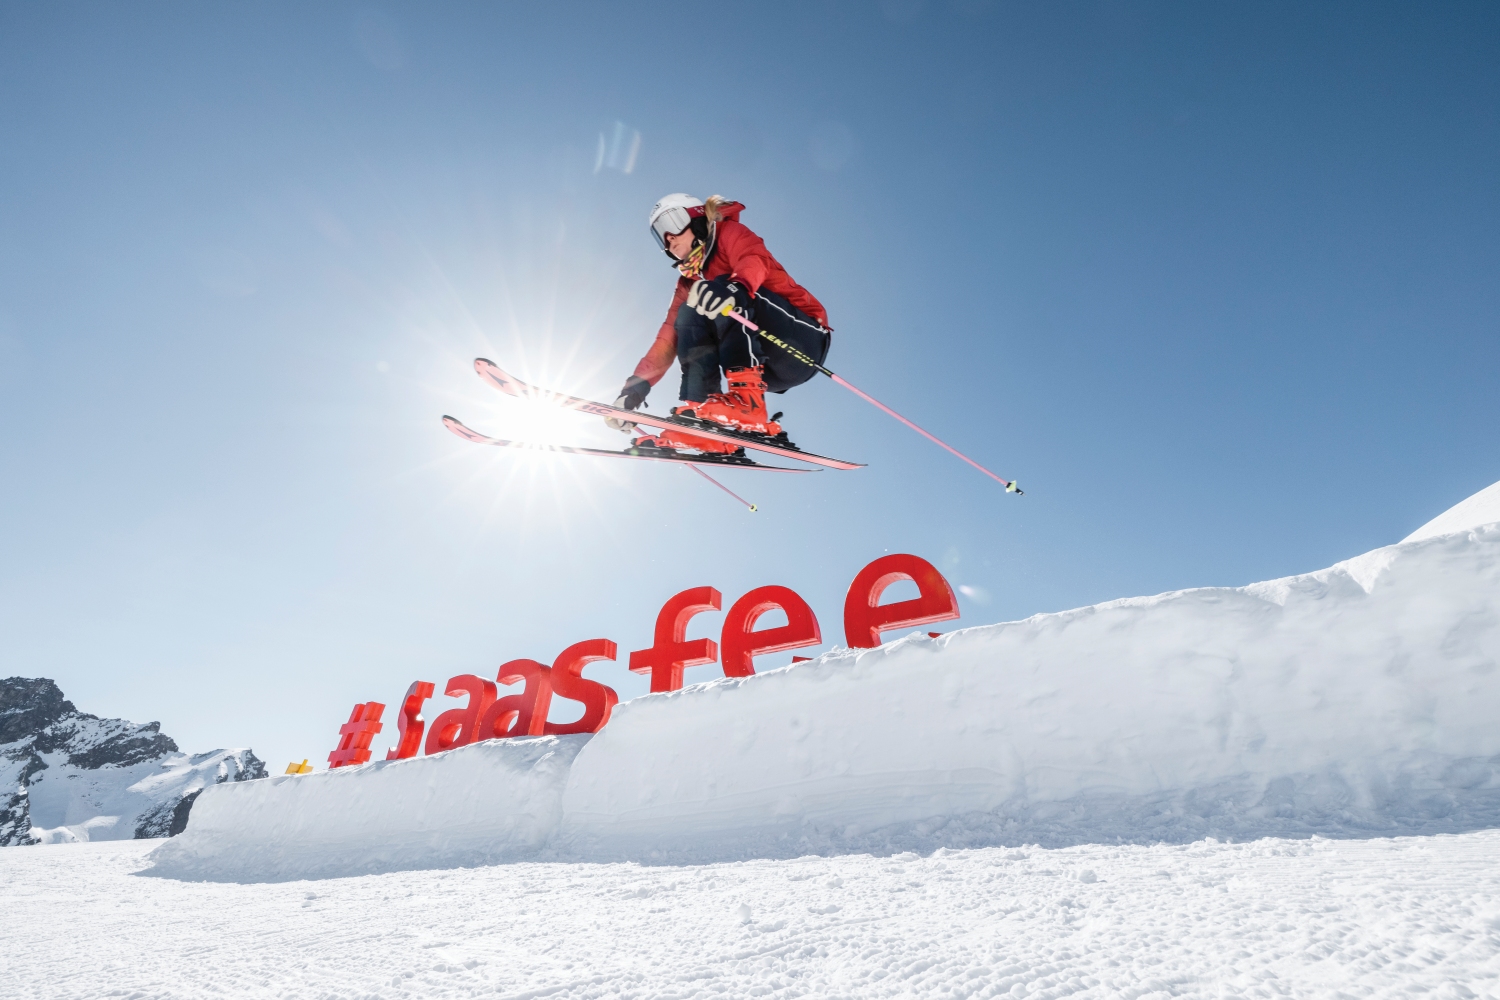 skiing saas fee chemmy alcott valais switzerland credit martin bissig